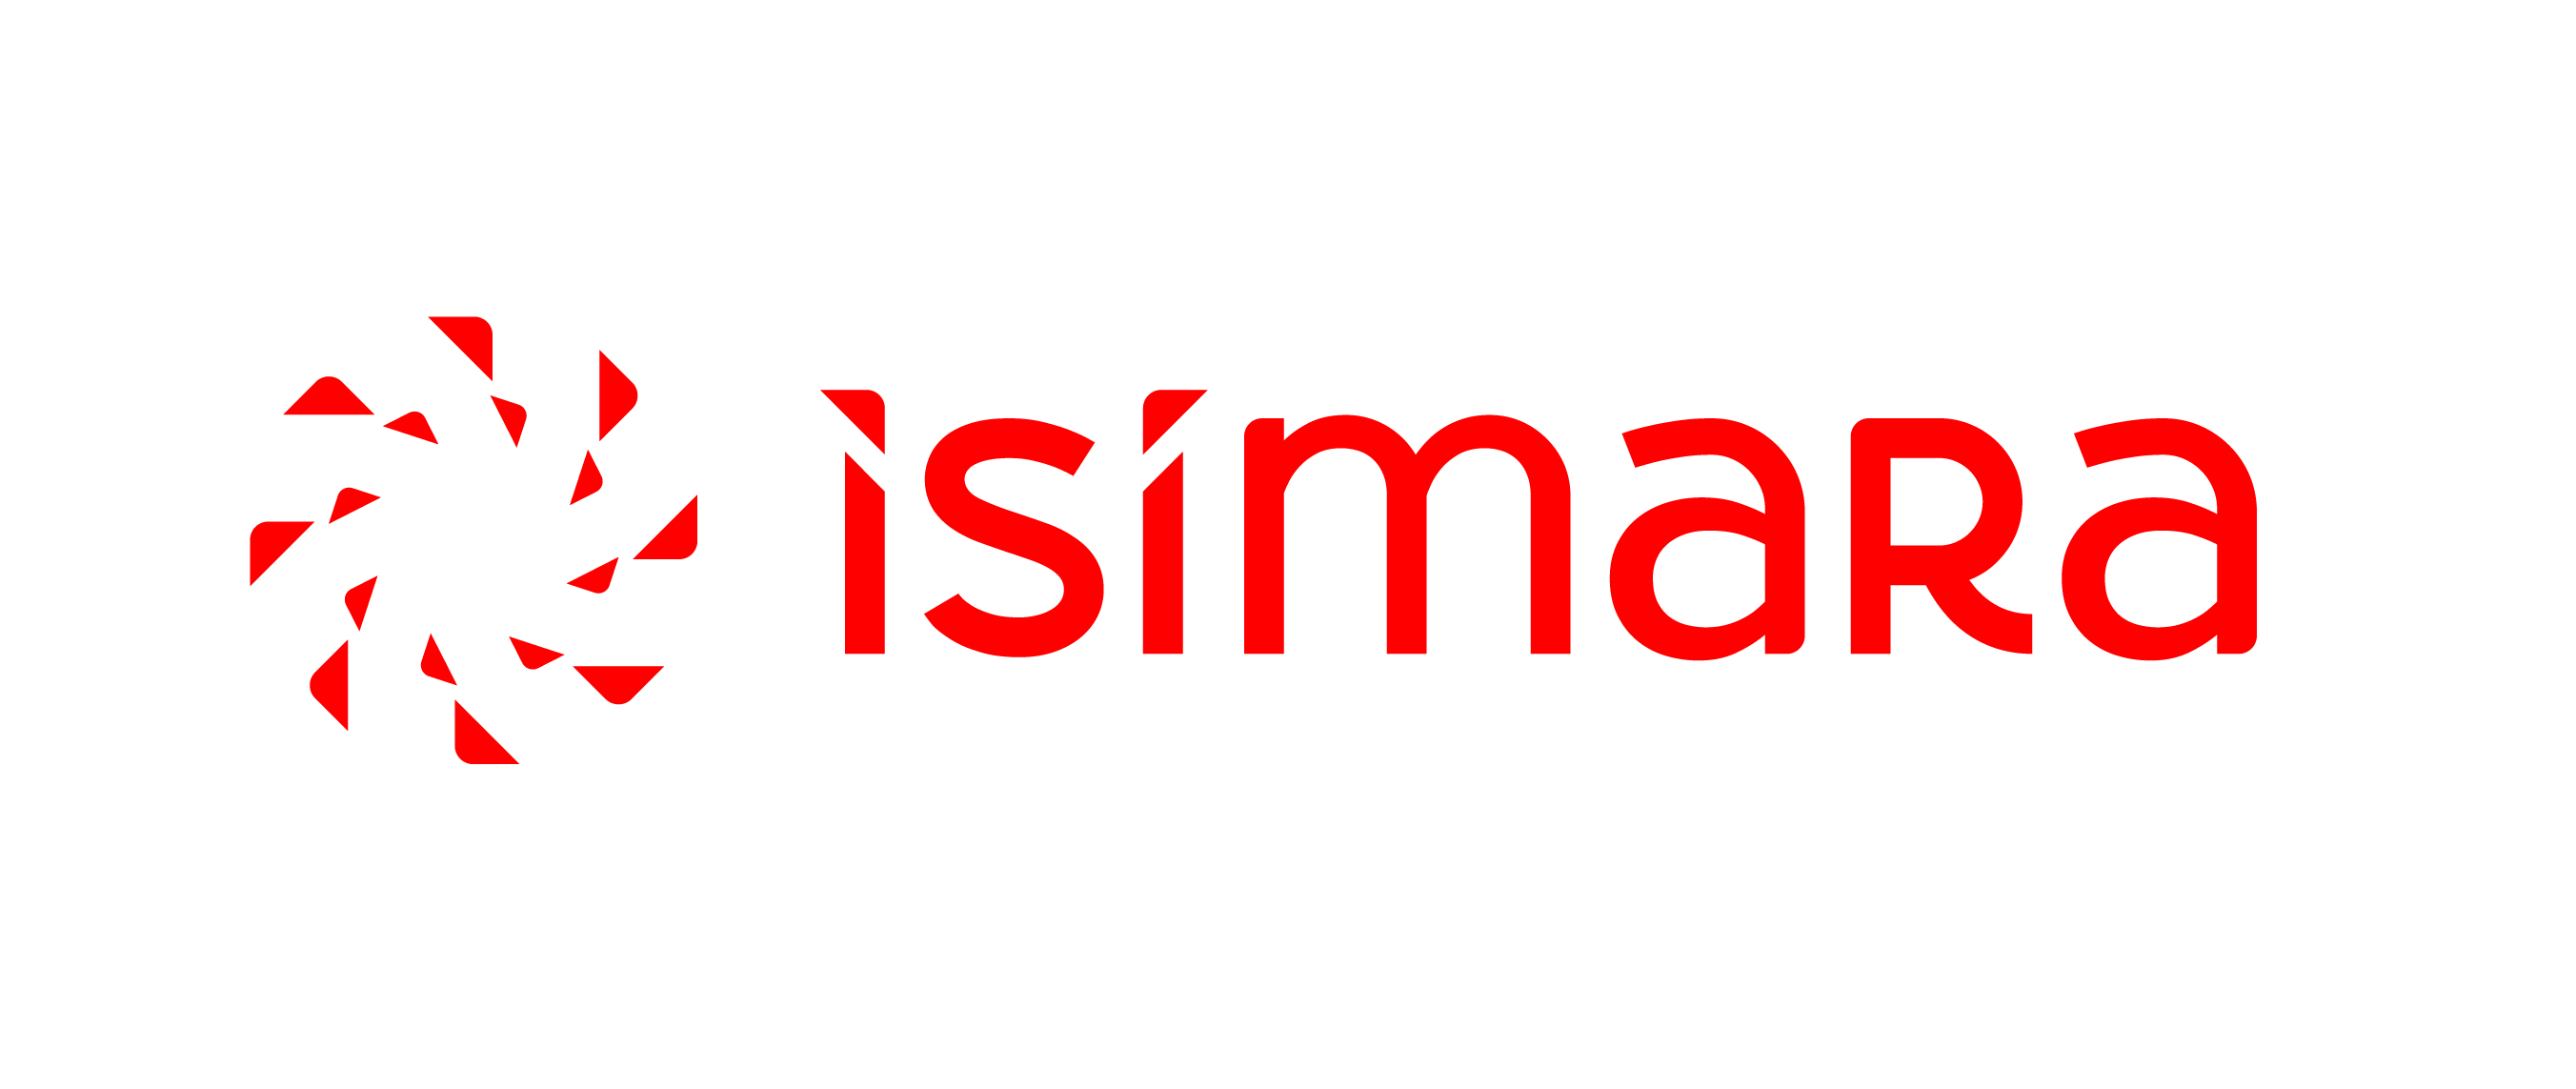 Isimara